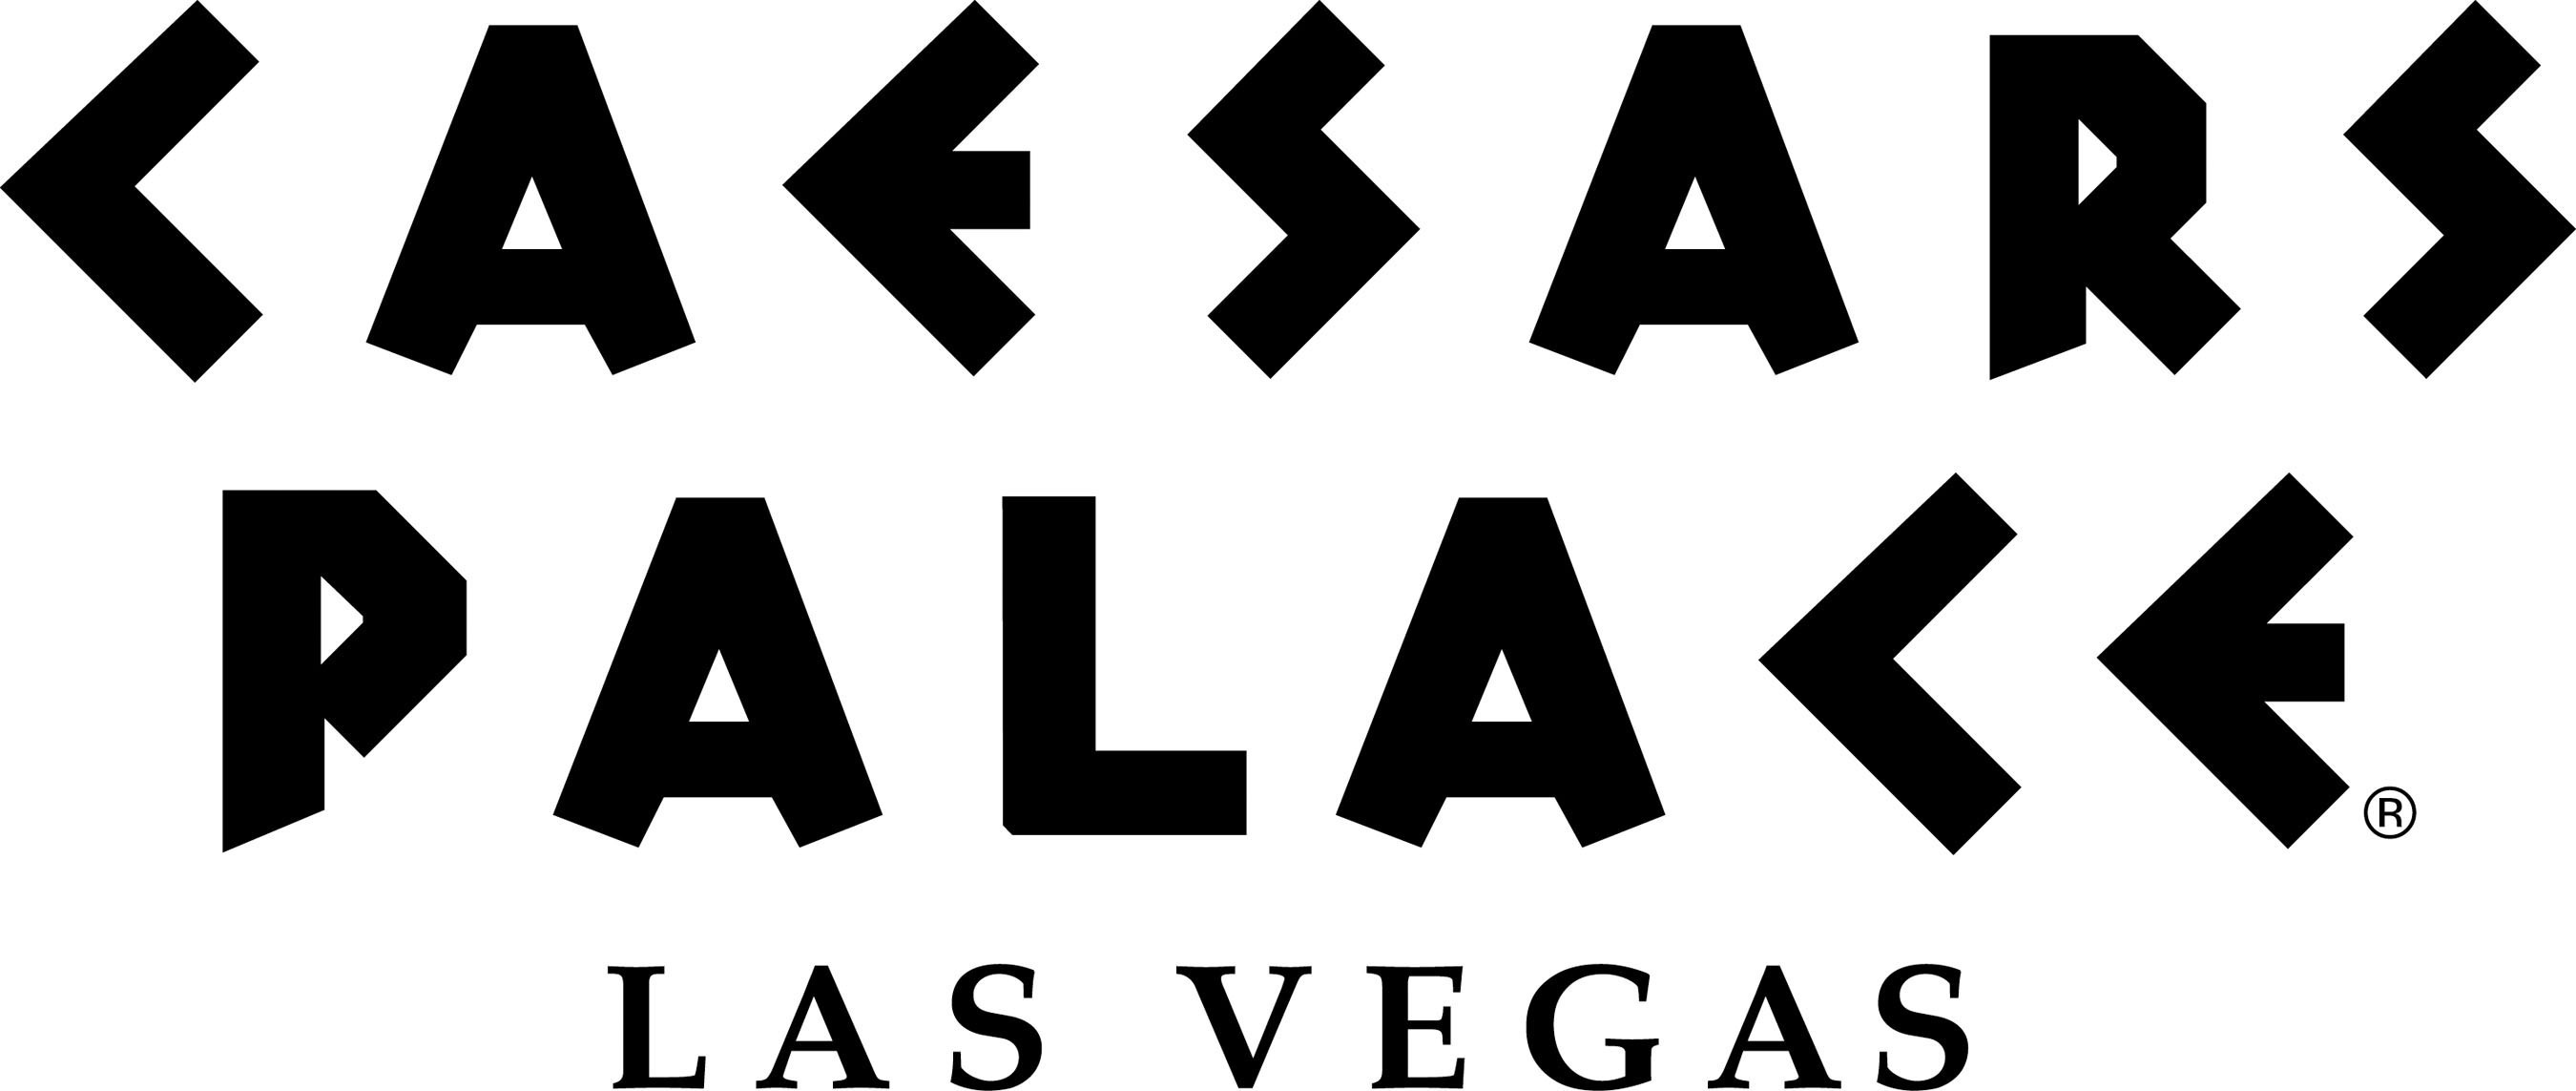 Caesars Palace Las Vegas.  (PRNewsFoto/Caesars Entertainment)